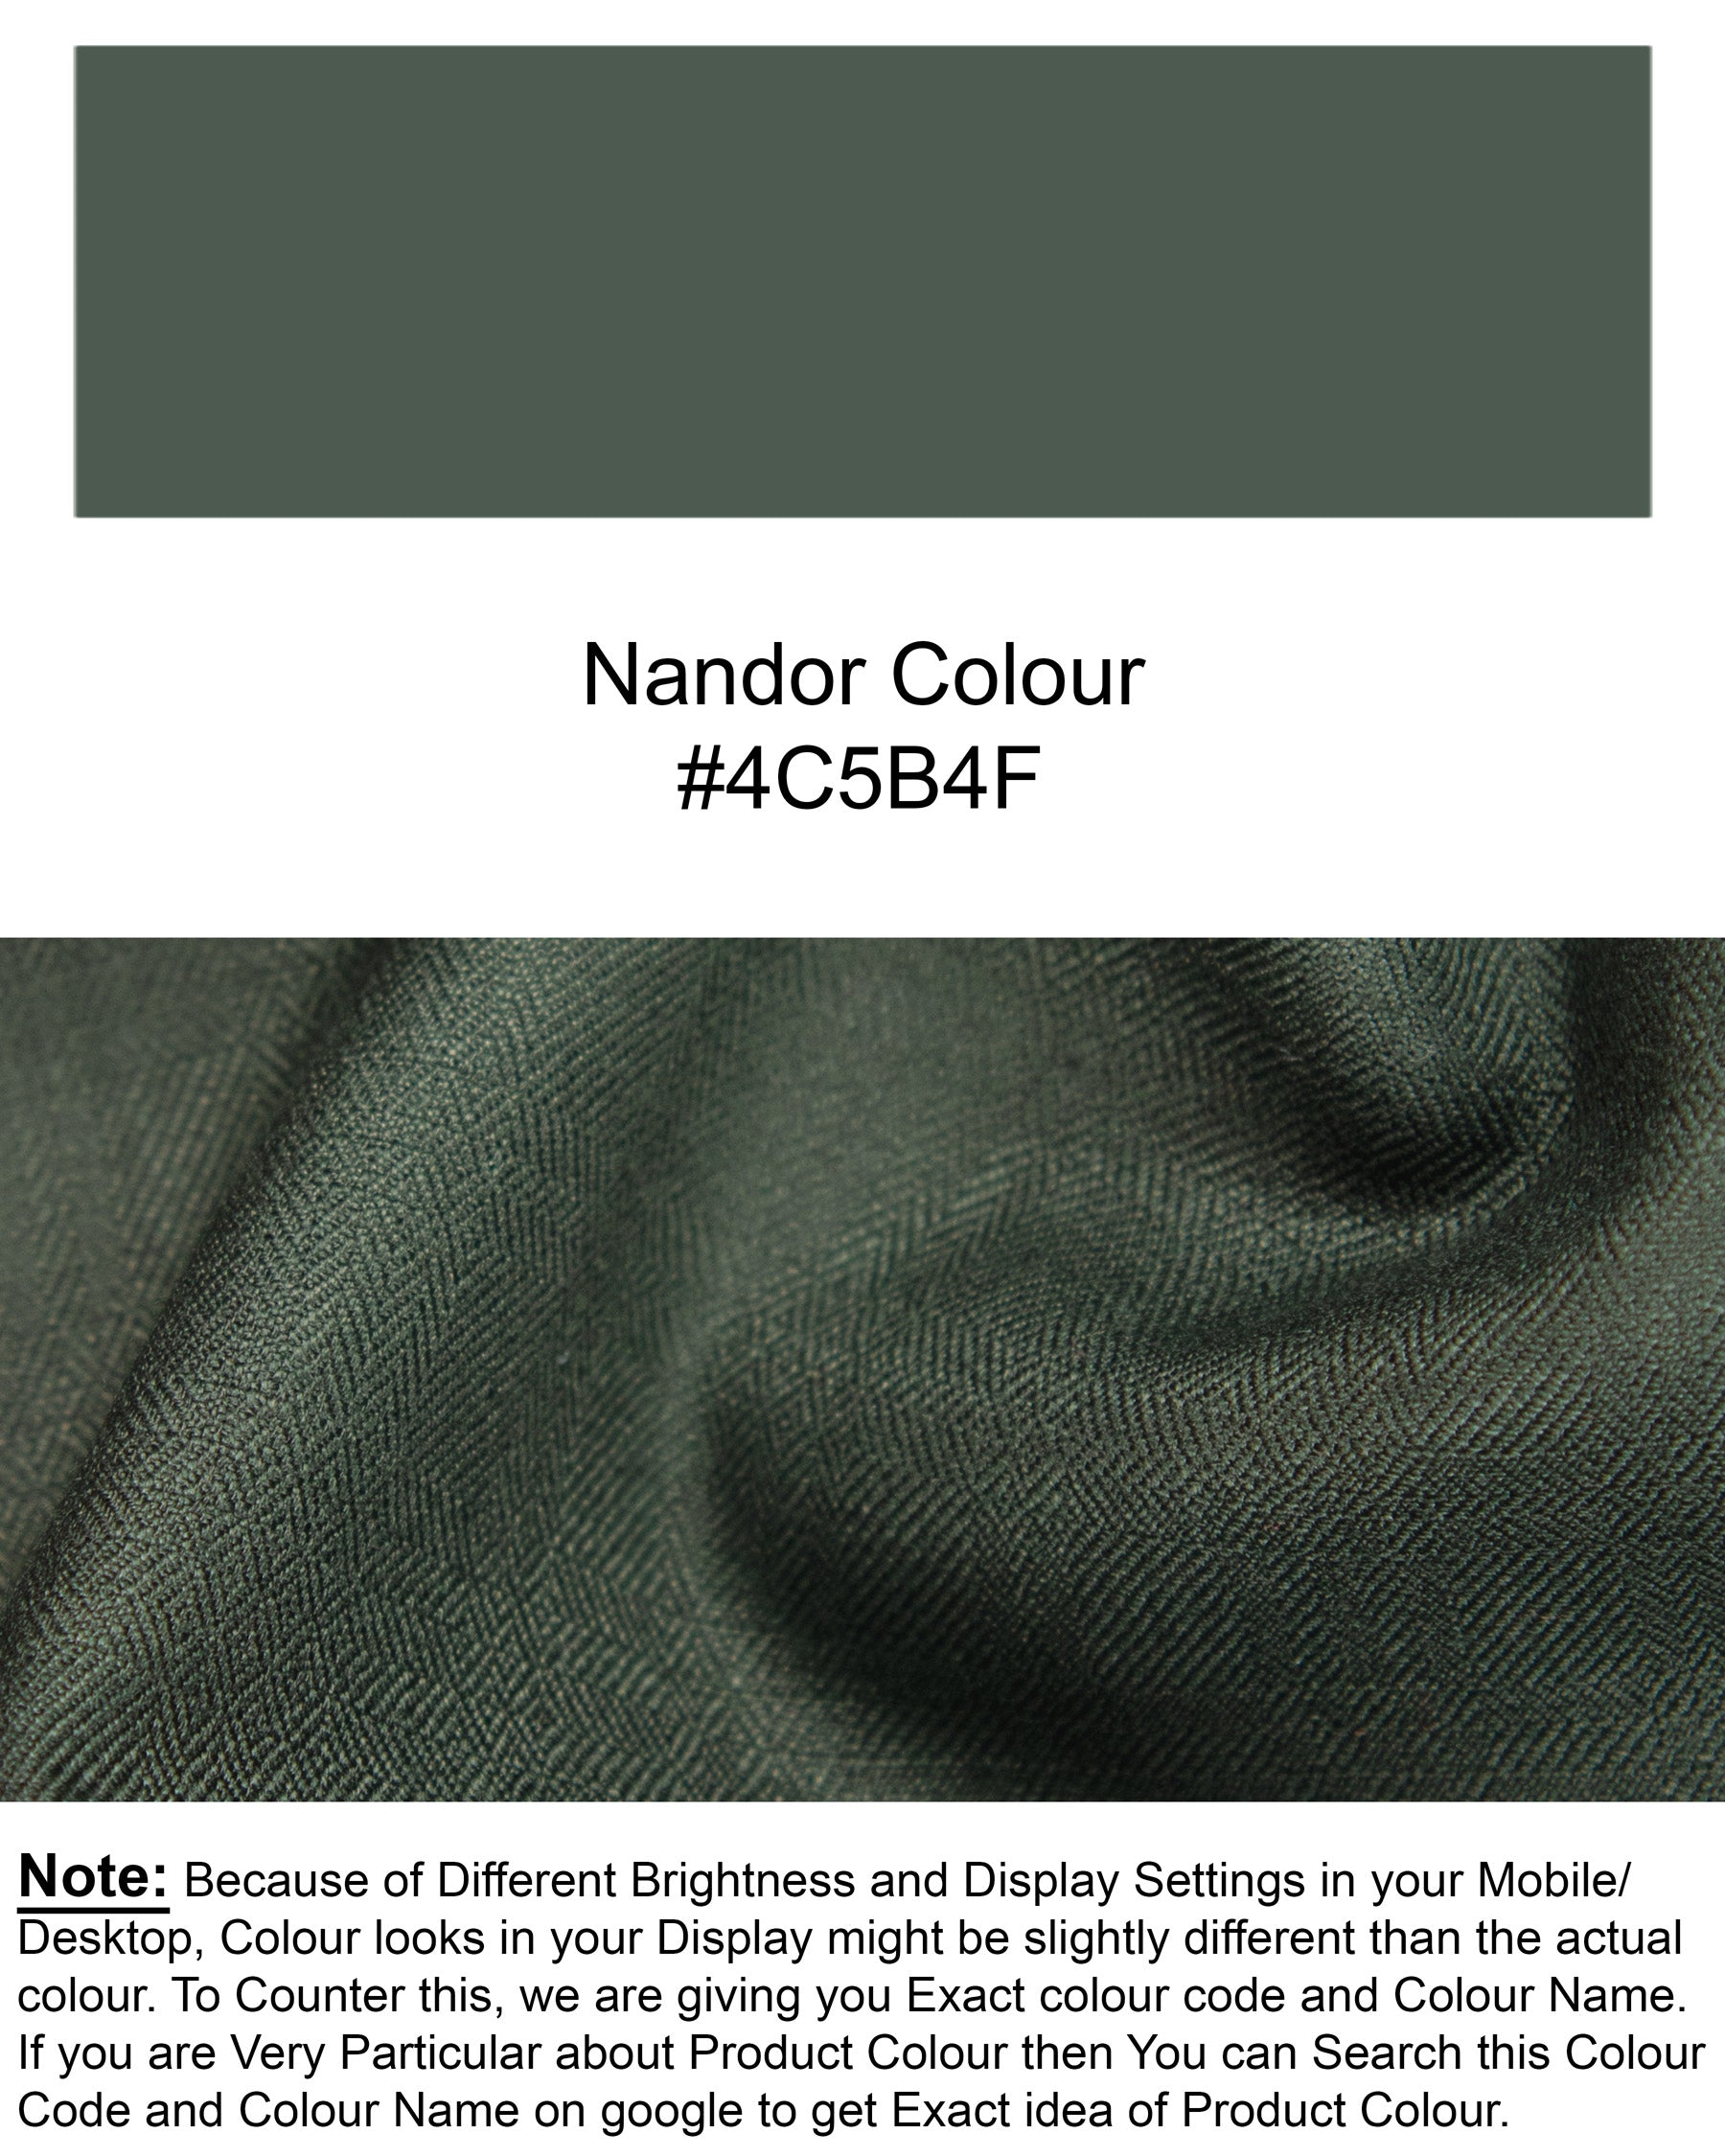 Nandor Green Tuxedo Wool Rich Blazer BL1307-BKL-36, BL1307-BKL-38, BL1307-BKL-40, BL1307-BKL-44, BL1307-BKL-42, BL1307-BKL-46, BL1307-BKL-48, BL1307-BKL-50, BL1307-BKL-52, BL1307-BKL-54, BL1307-BKL-56, BL1307-BKL-58, BL1307-BKL-60